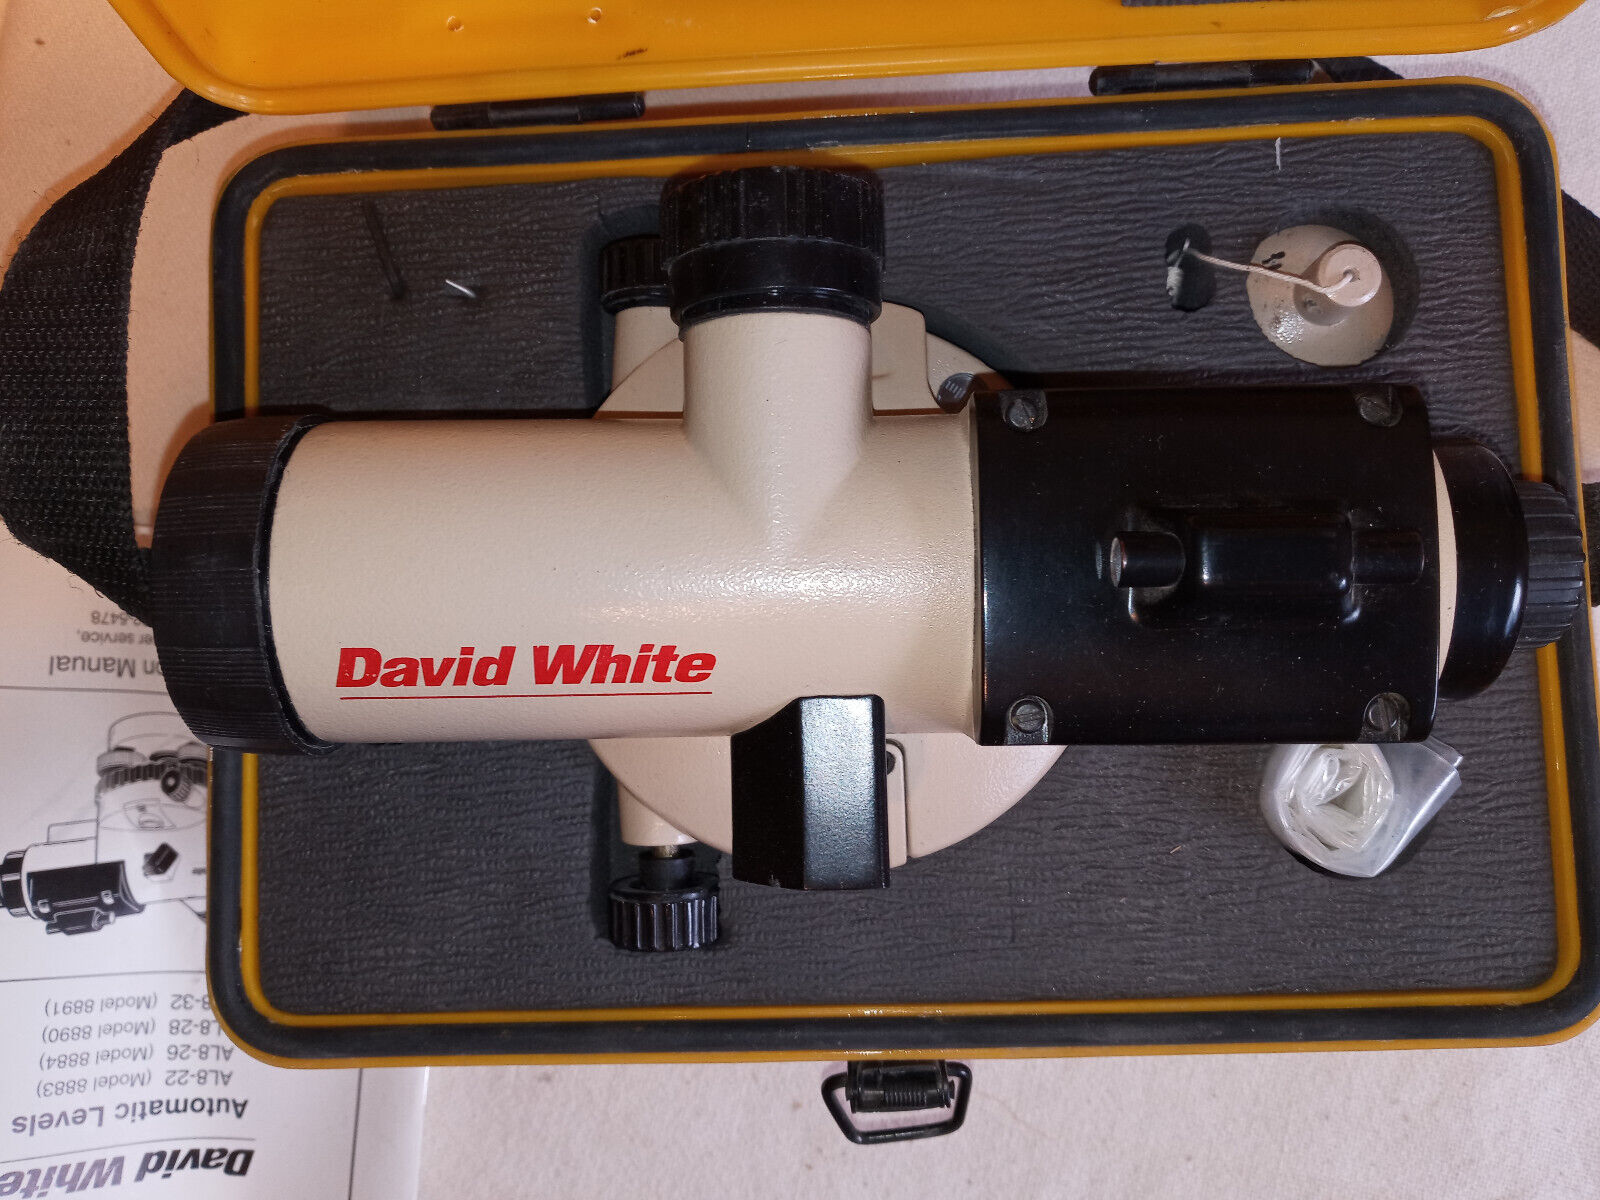 DAVID WHITE AL8-26 SURVEYING TOOL  AUTOMATIC OPTICAL TRANSIT LEVEL W/ CASE